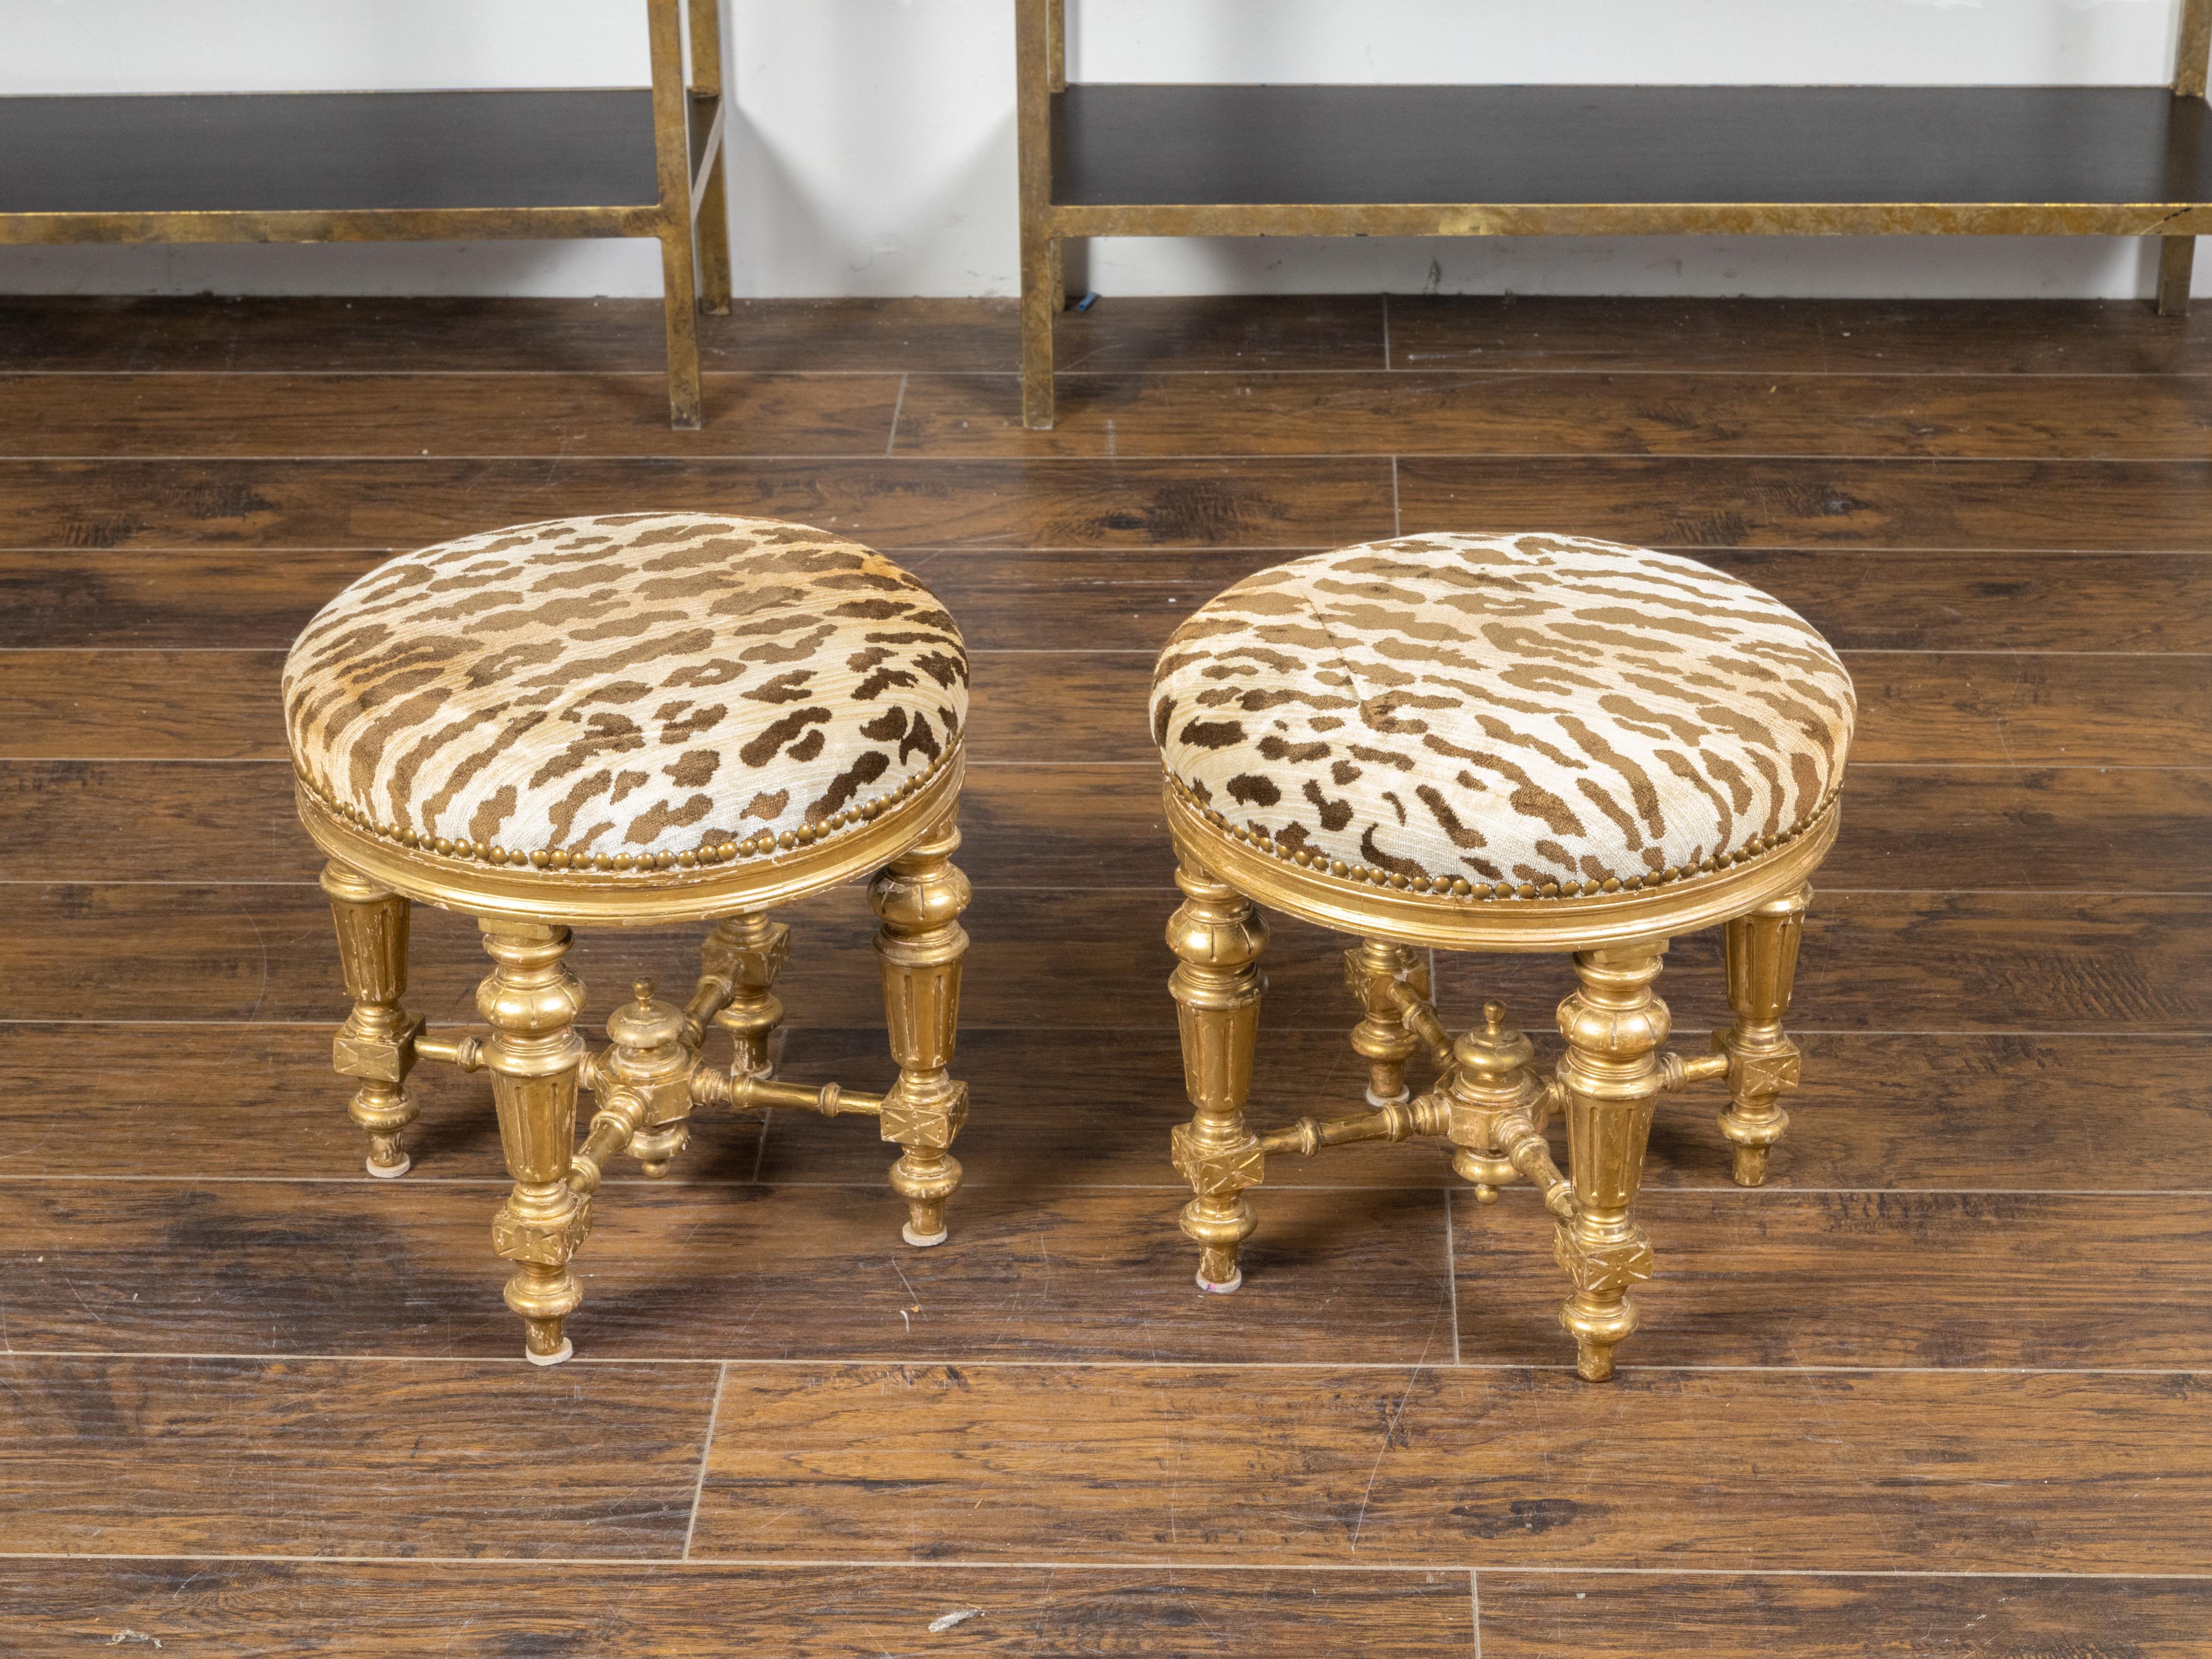 Une paire de tabourets en bois doré français du 19ème siècle, avec des pieds cannelés, des traverses et une tapisserie de style léopard. Créée en France au XIXe siècle, cette paire de tabourets en bois doré présente une assise circulaire recouverte